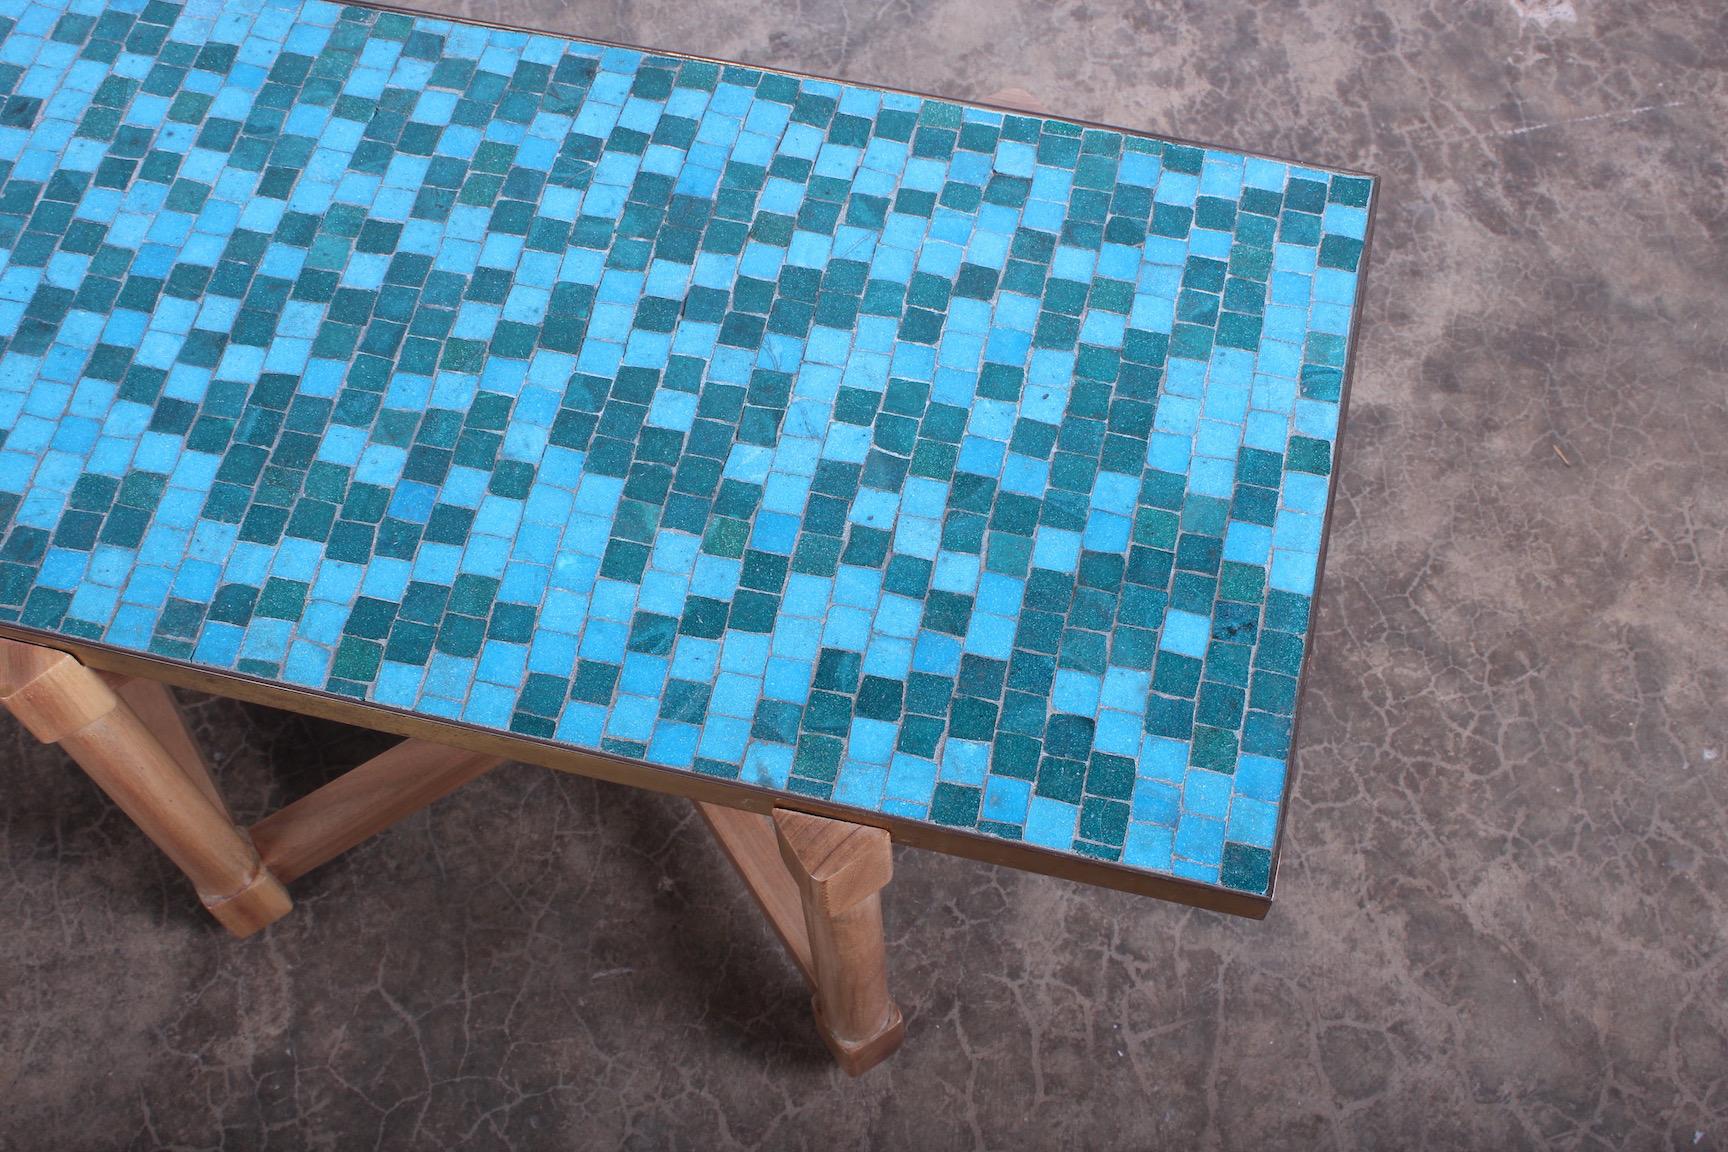 Dunbar Tile Top Table by Edward Wormley 2